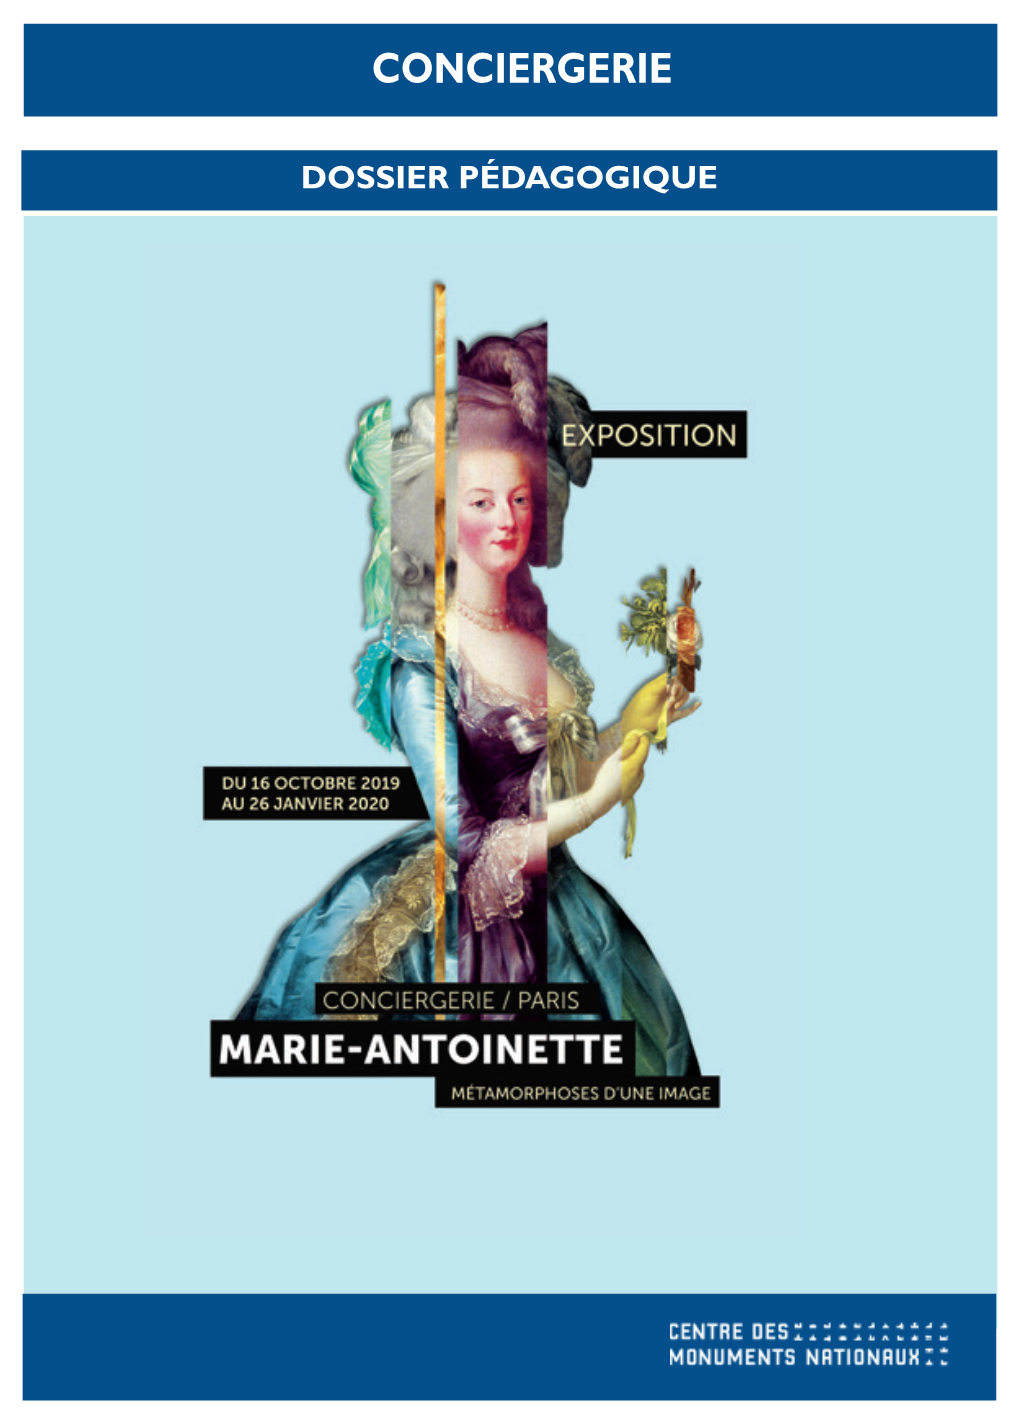 DOSSIER PEDAGOGIQUE EXPO Marie-Antoinette